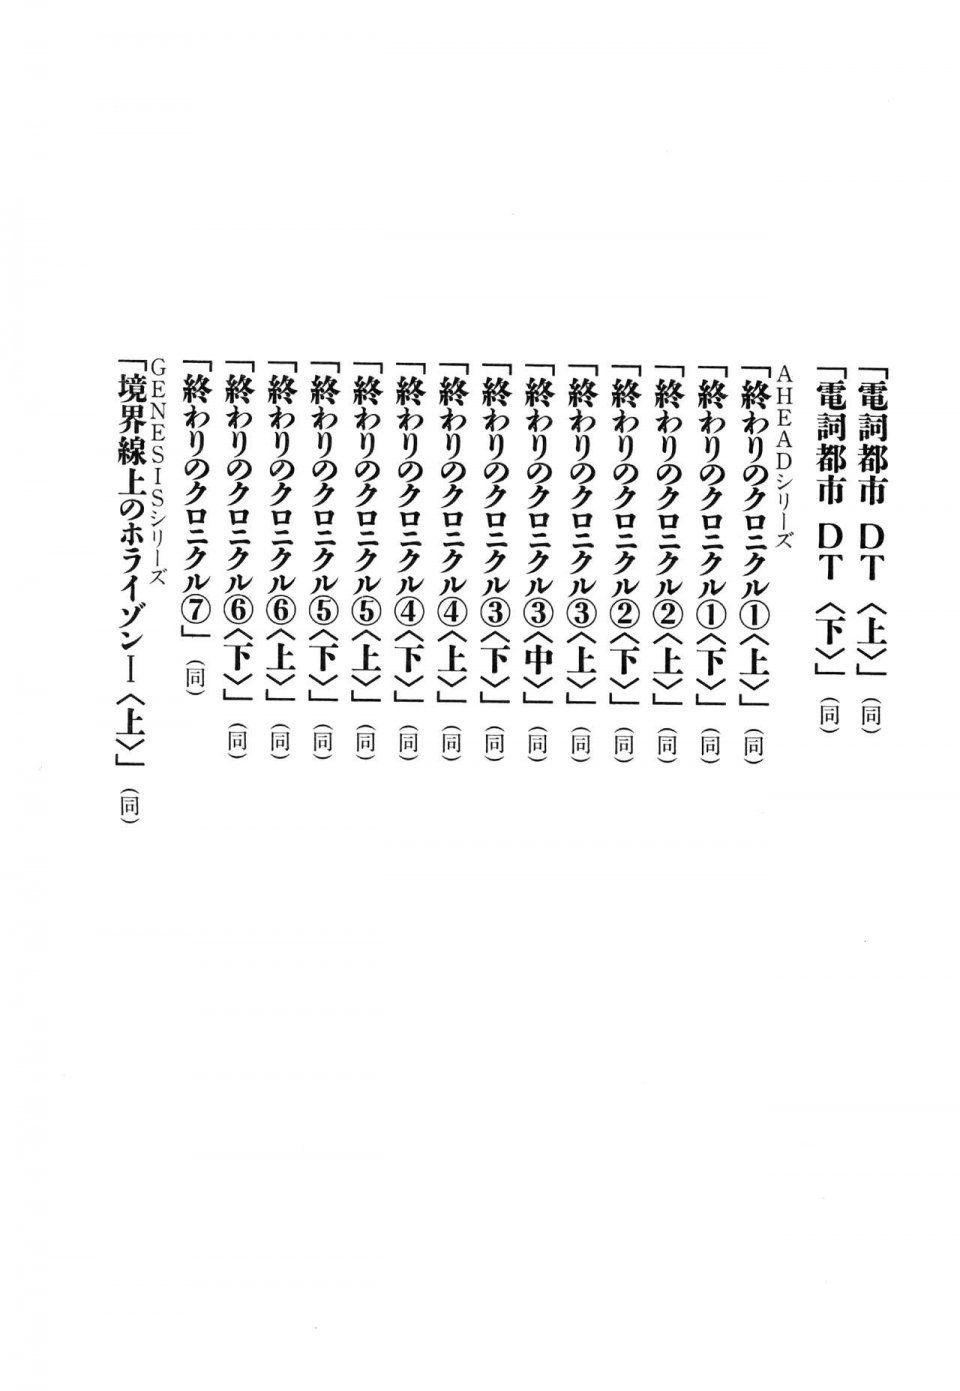 Kyoukai Senjou no Horizon LN Vol 14(6B) - Photo #835